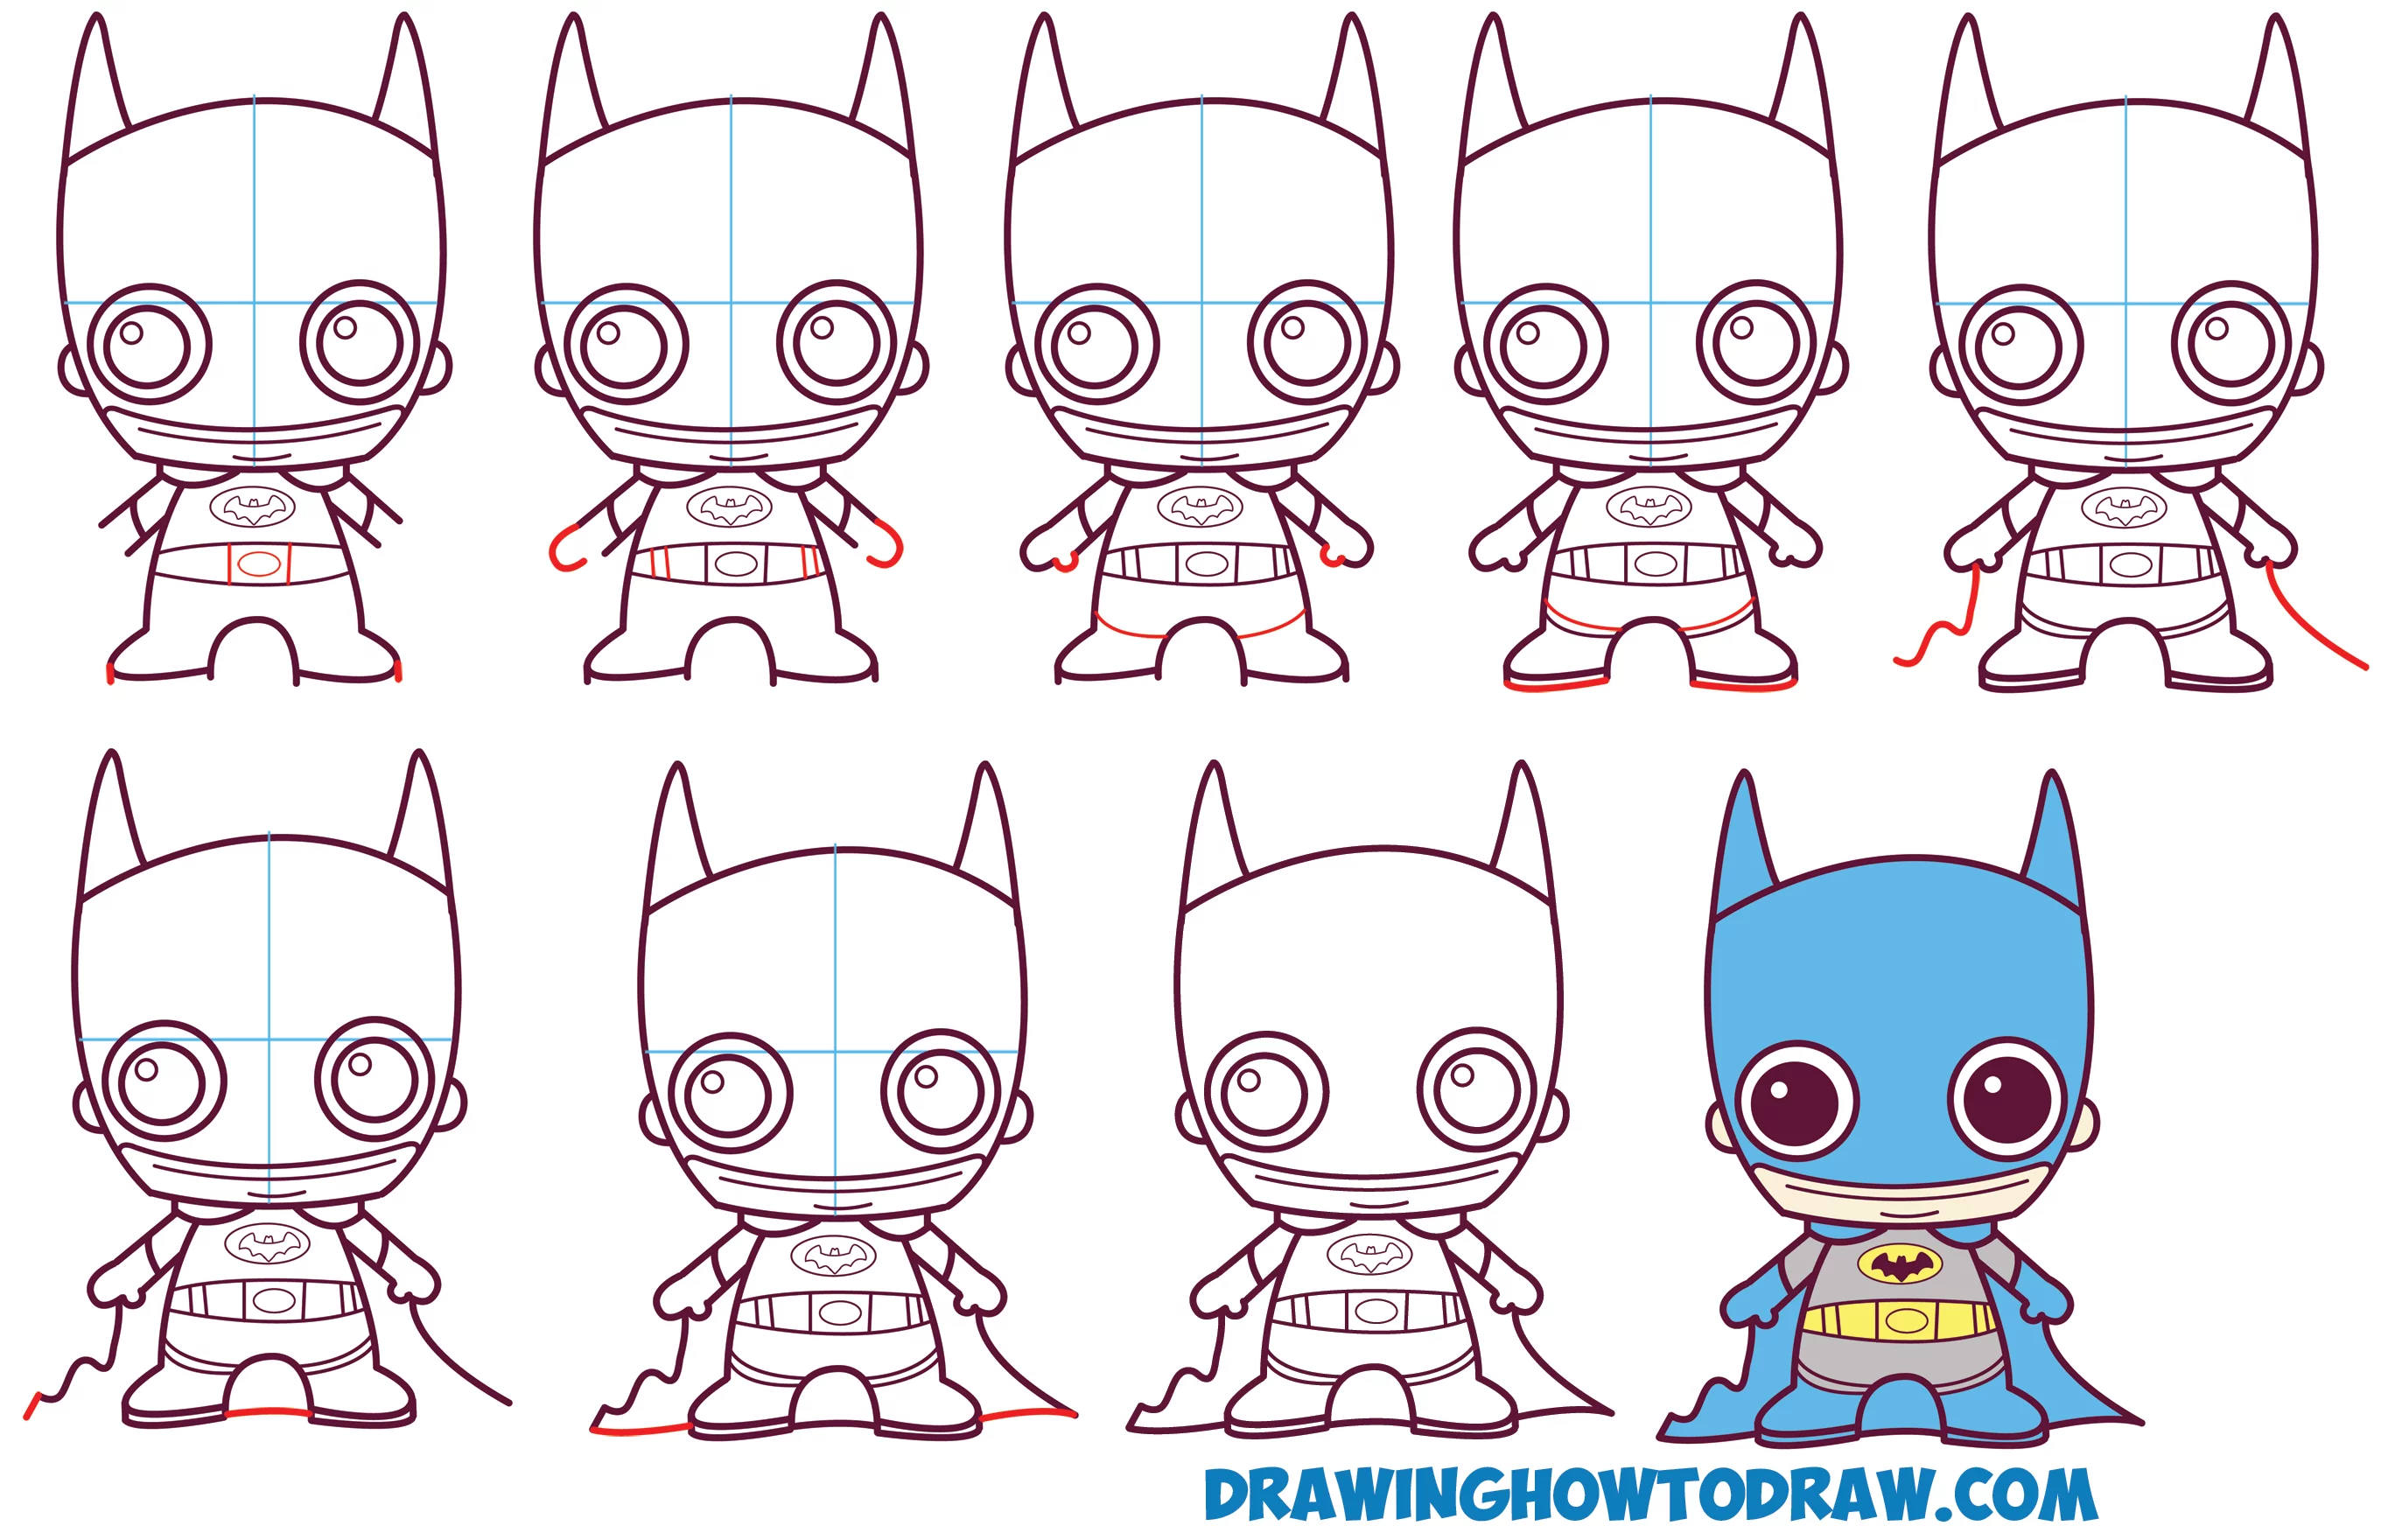 Leren Tekenen Leuke / Baby / Kawaii / Chibi Batman van DC Comics in Eenvoudige Stappen tekenlessen voor Kinderen